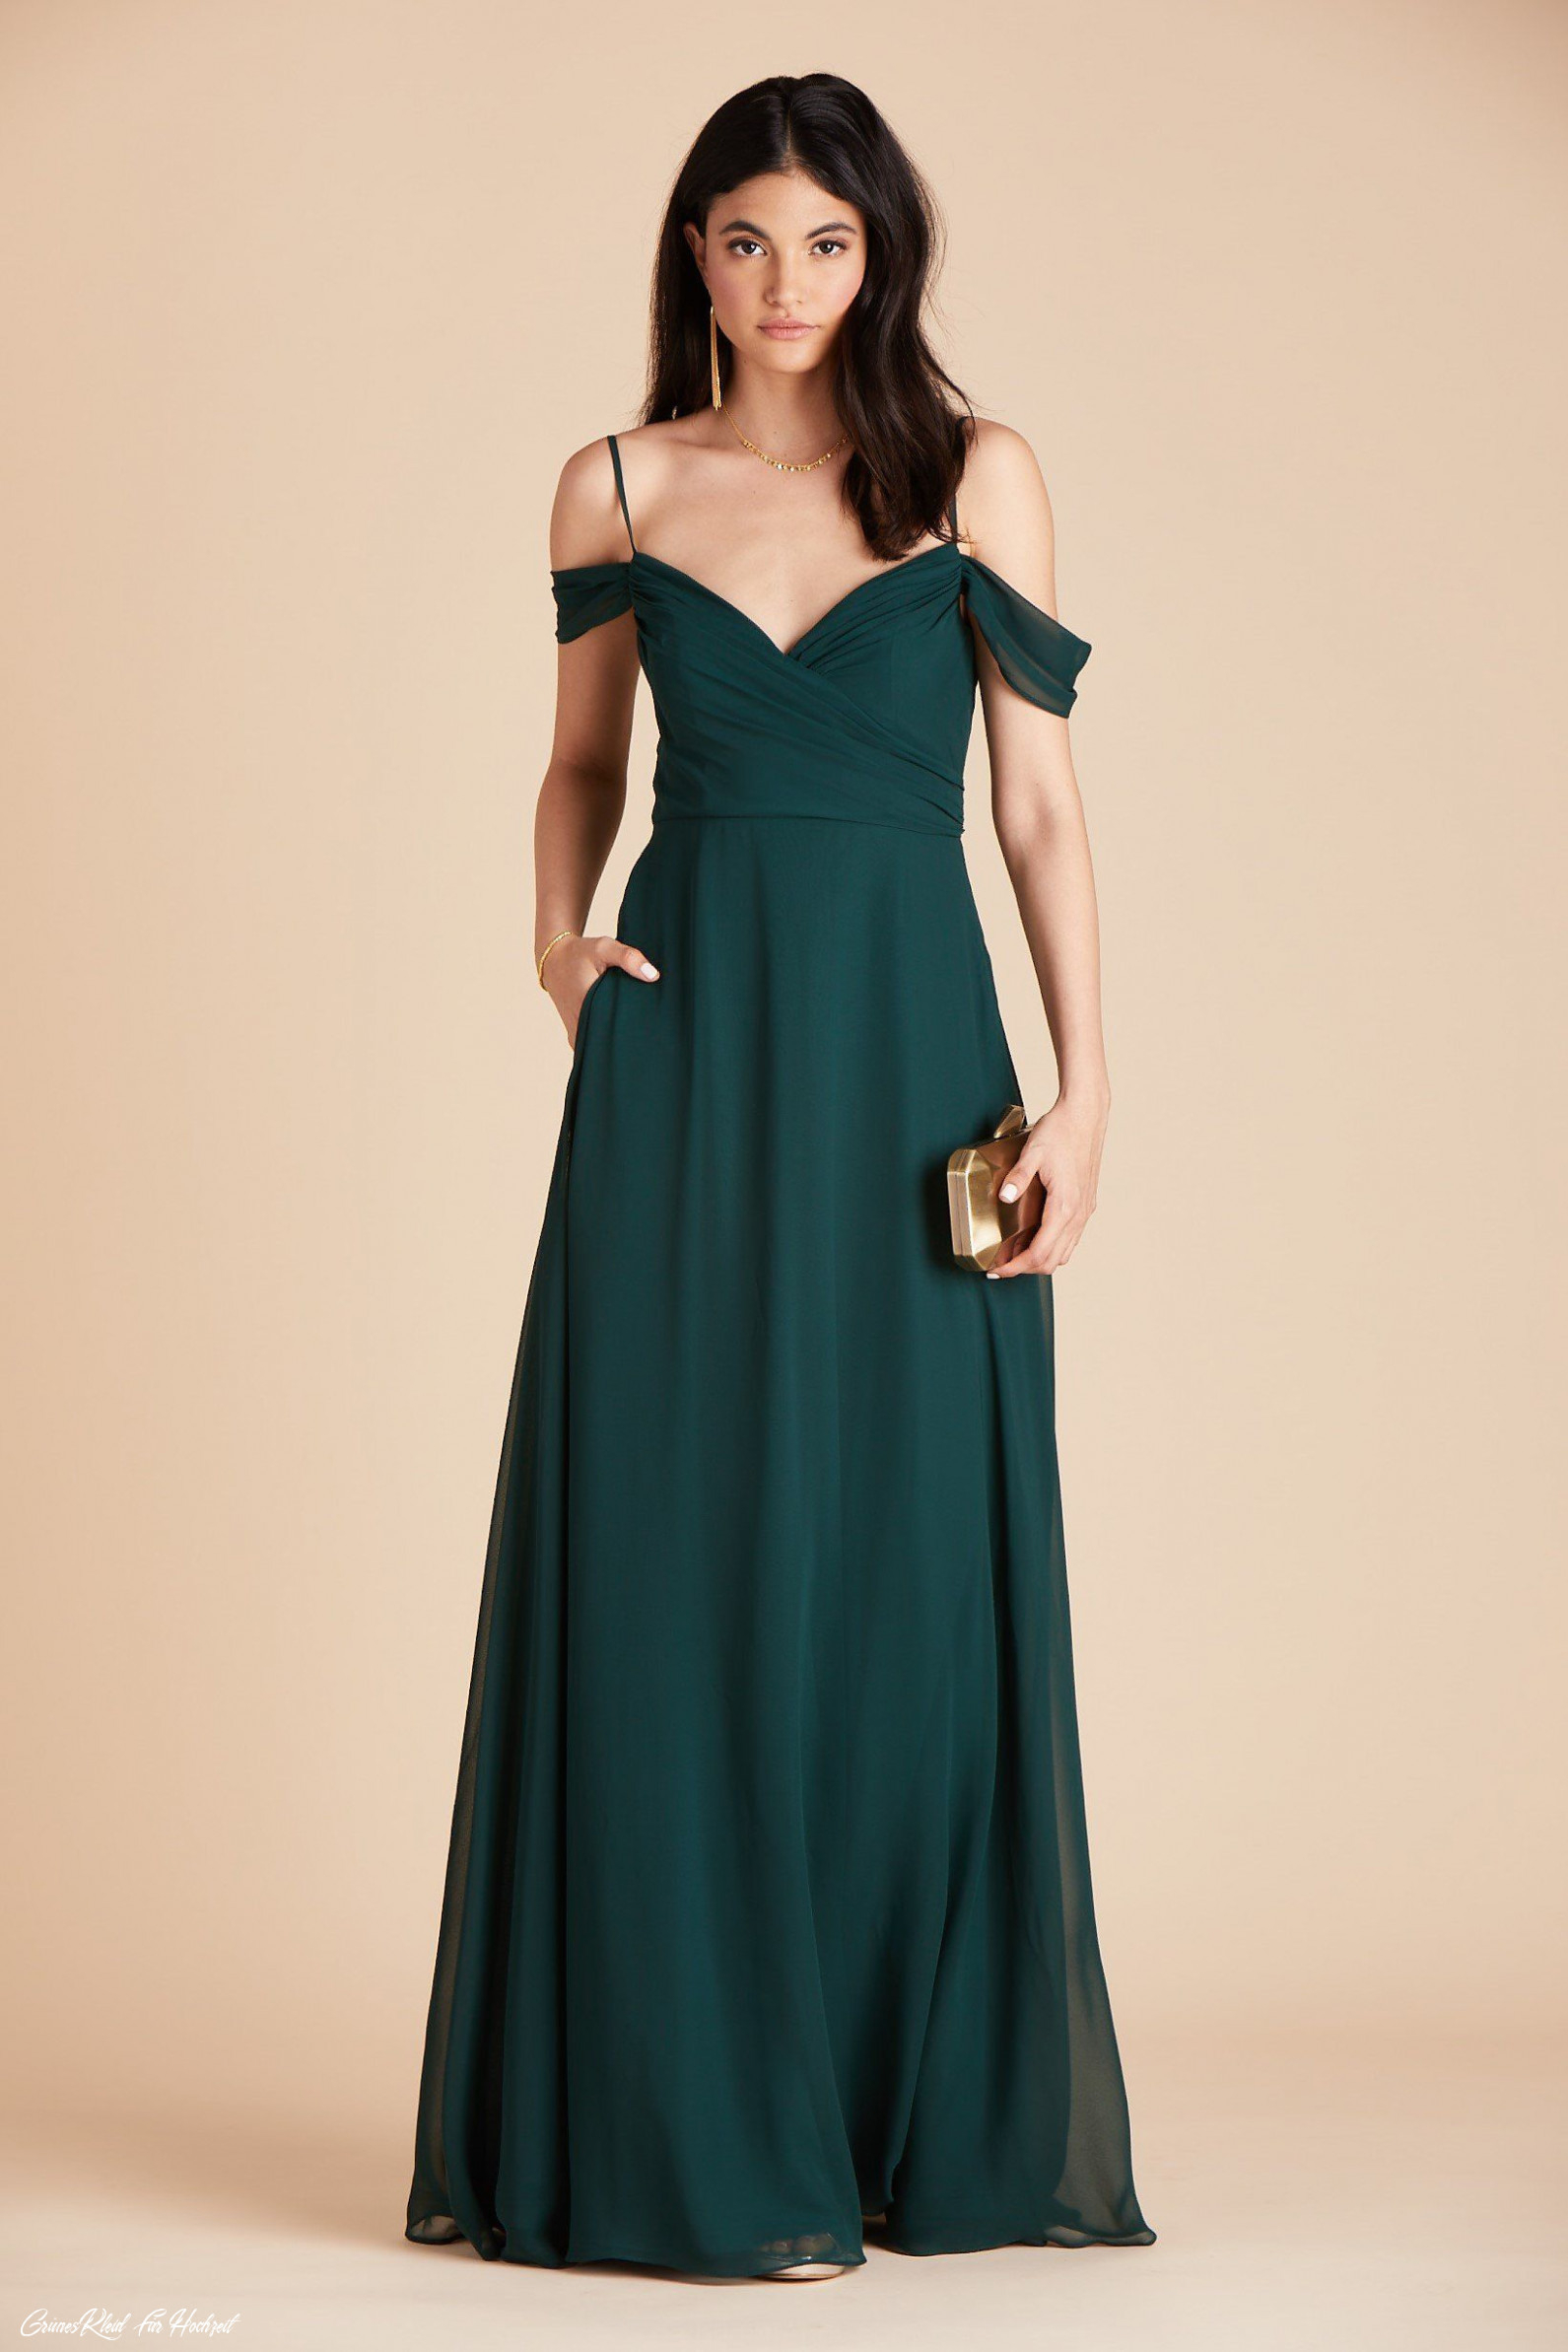 Grünes Kleid Für Hochzeit  Abendkleider